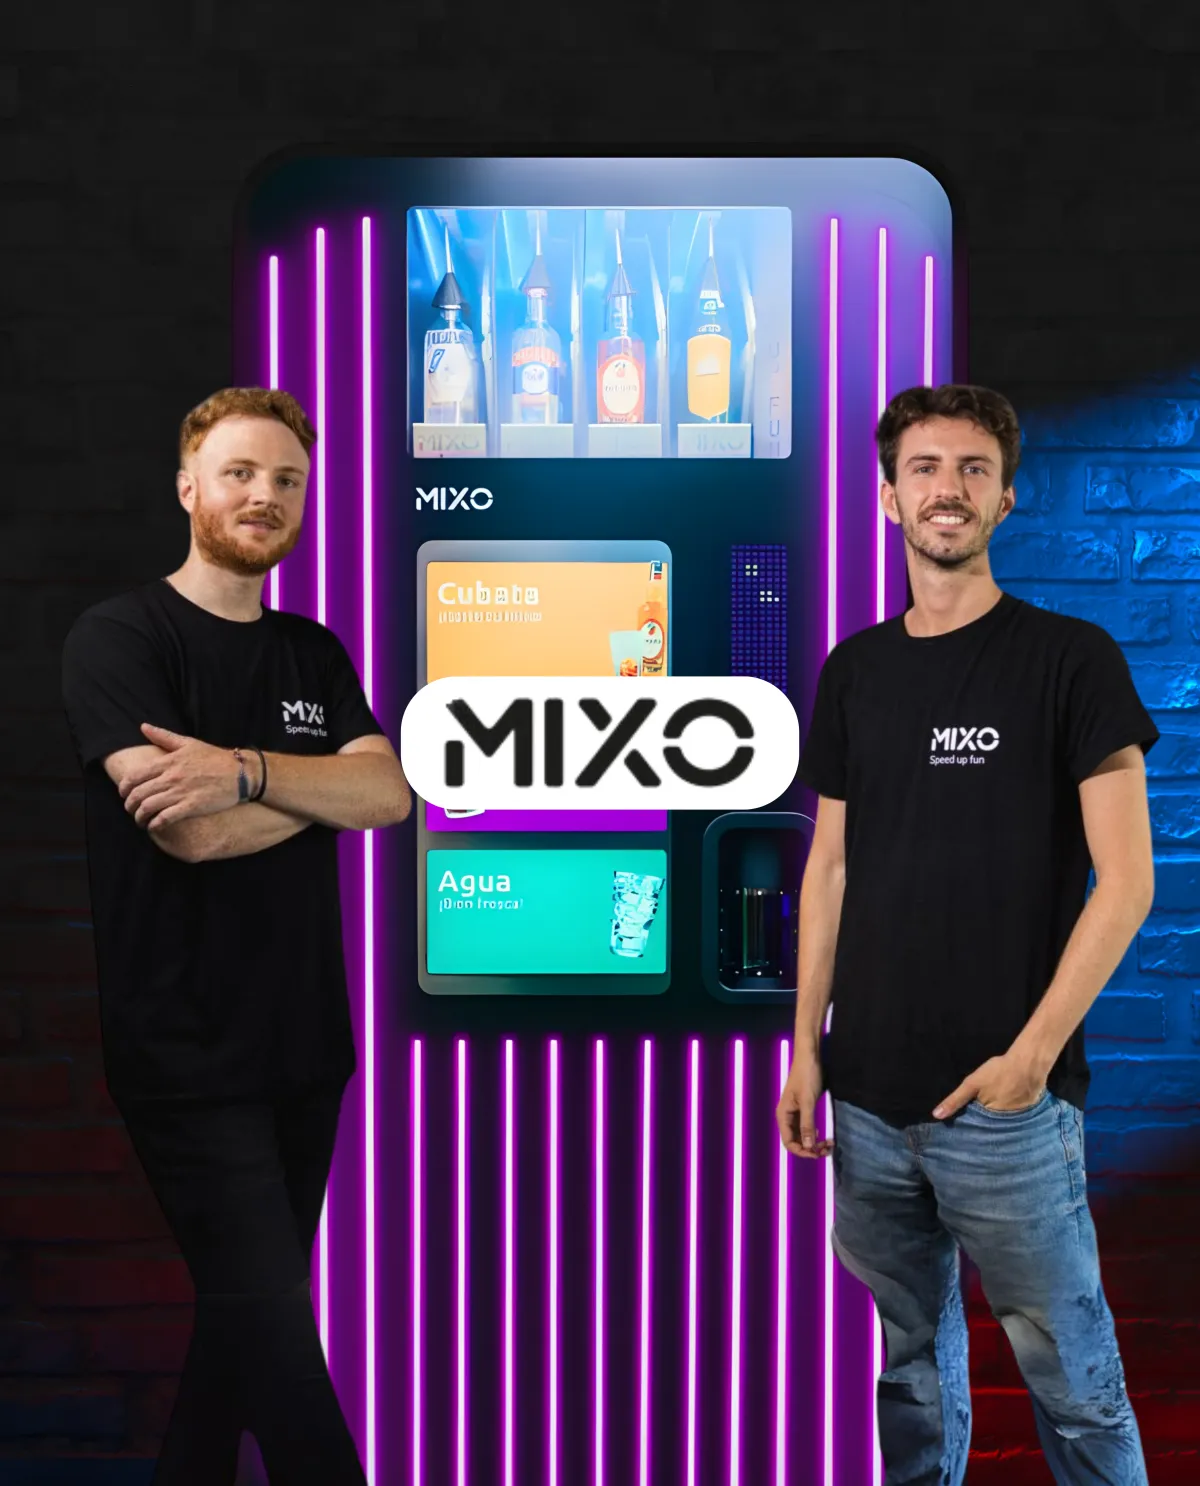 Los fundadores de MIXO Martin Cohen y Xavier Olivé, junto a una máquina vending que sirve cubatas y otras bebidas